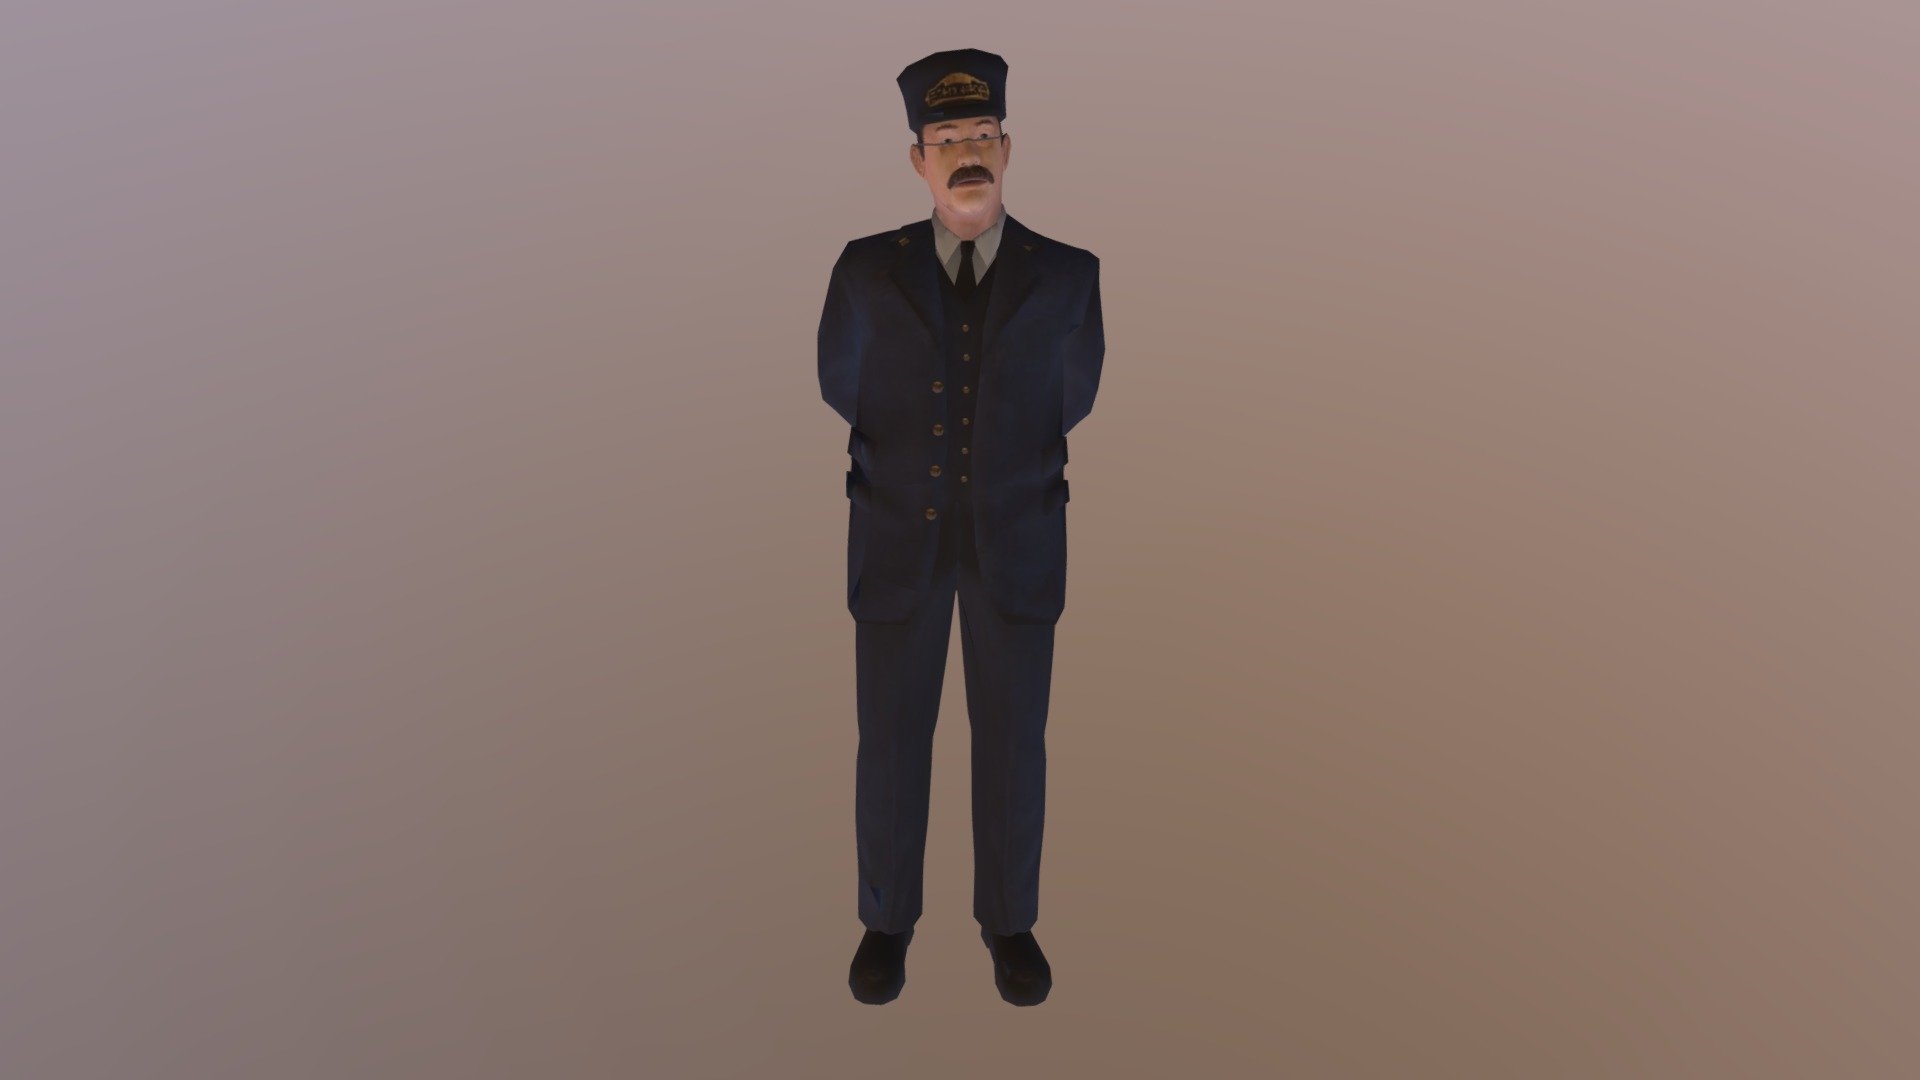 Conductor Polar Express Gamecube Download Free 3D Model By Kenton harris kenton harris 51ed925 